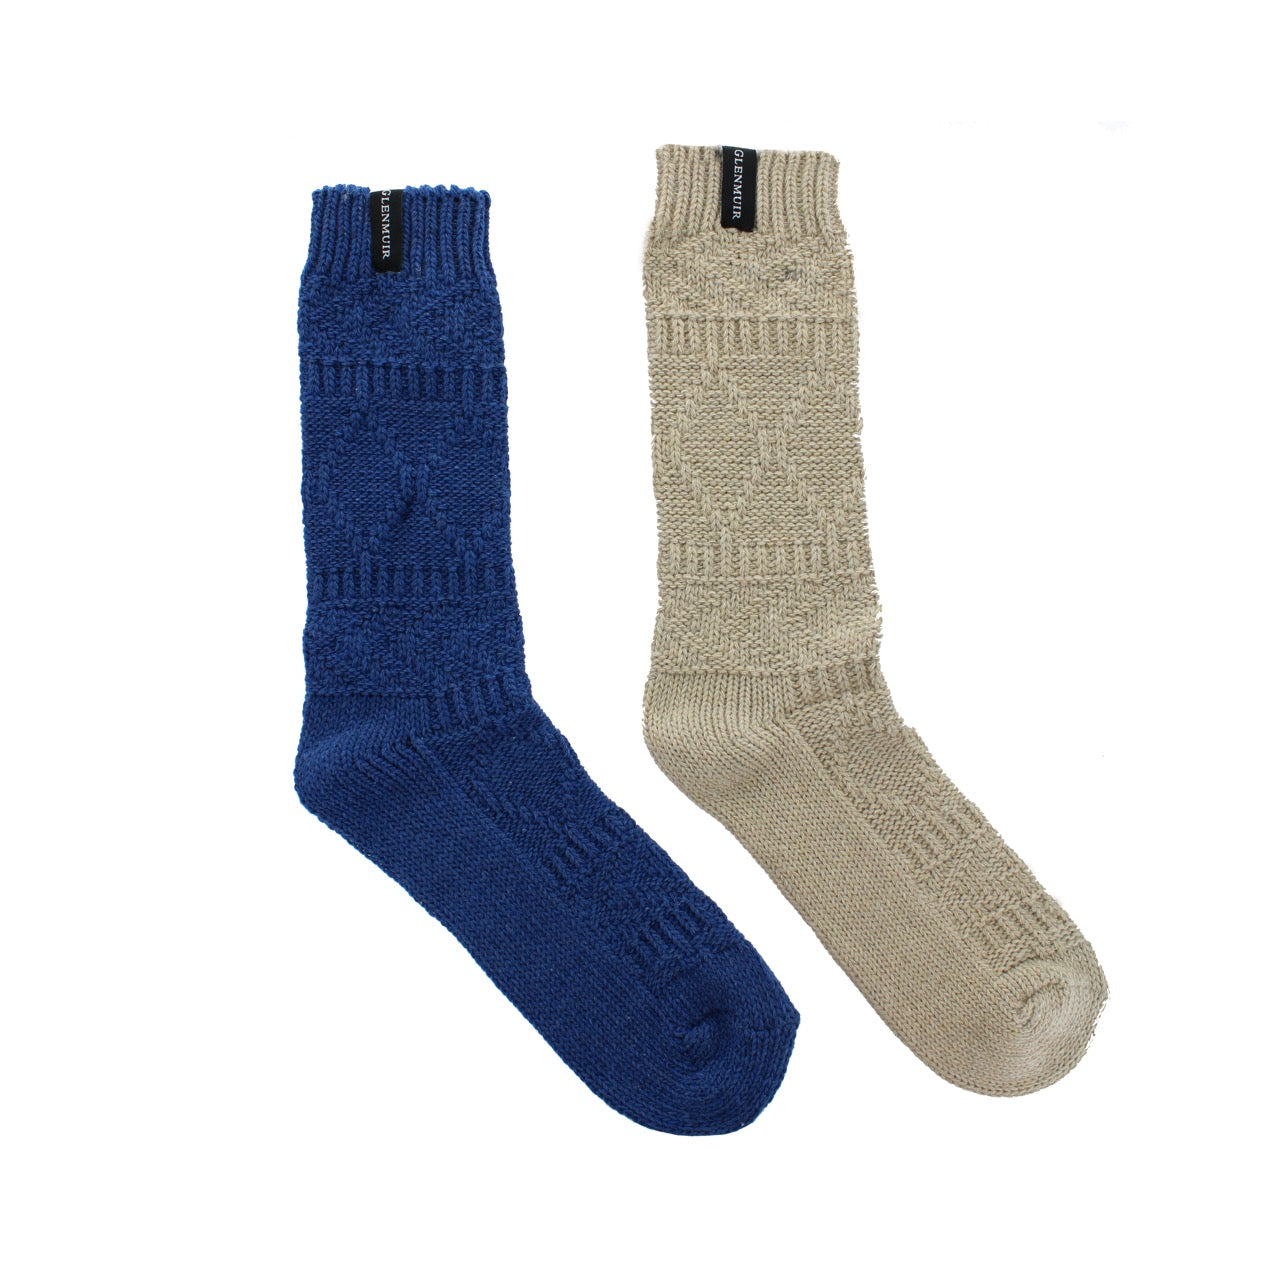 GLENMUIR 2PK Merino Wool Blend Boot Socks- Mens 7-11